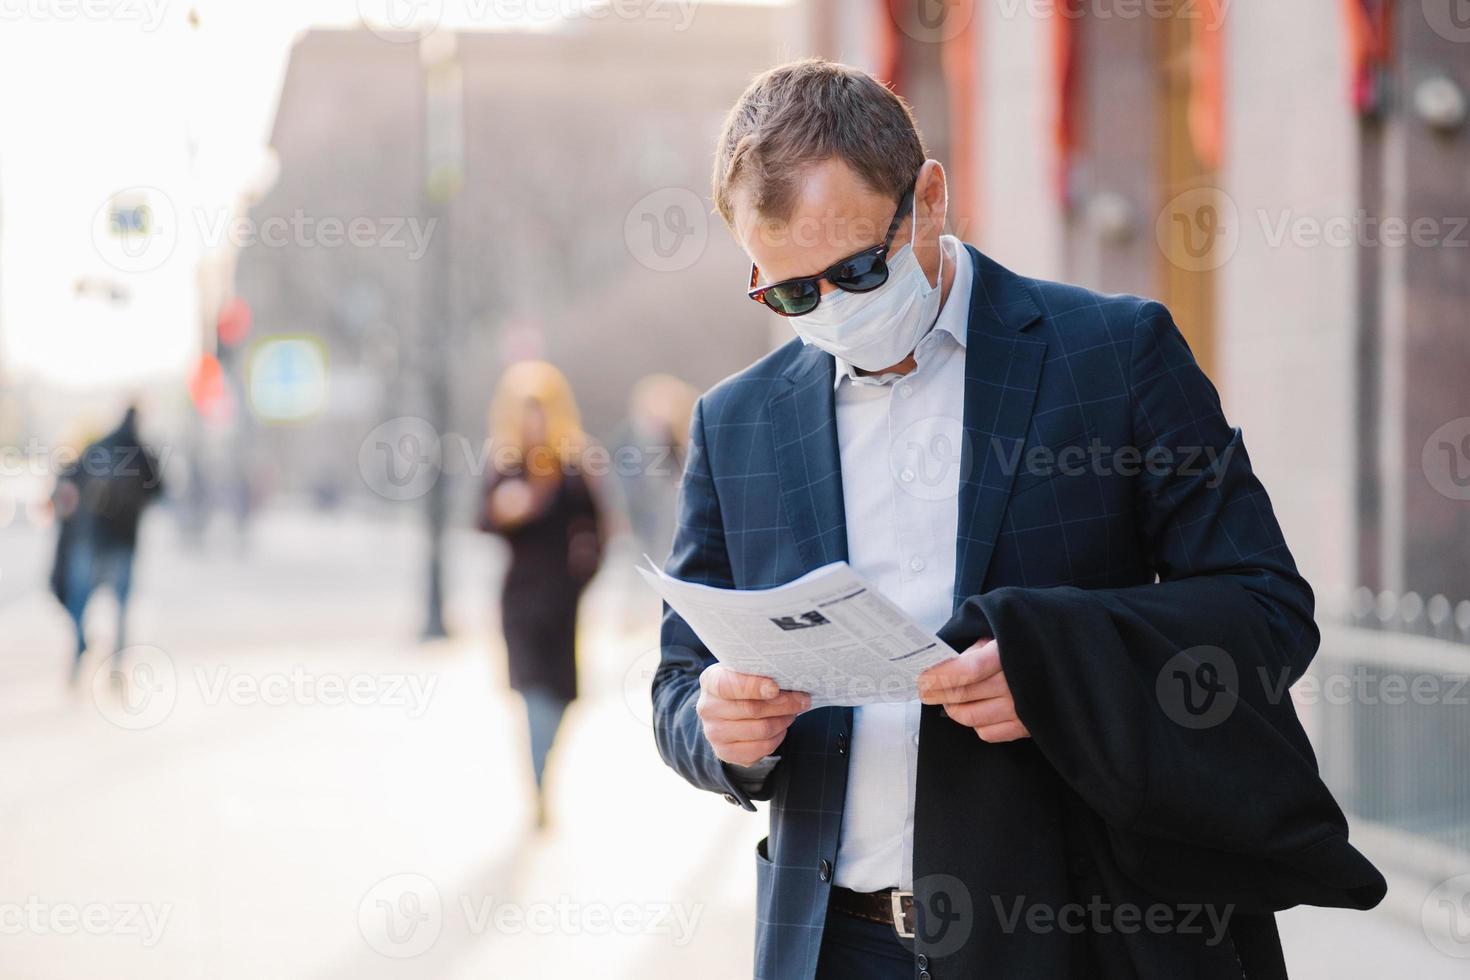 doença do coronavírus. um banqueiro masculino sério lê o jornal atentamente, descobre notícias sobre a situação pandêmica em todo o mundo, usa máscara protetora, evita a propagação de vírus, fica na rua. foto